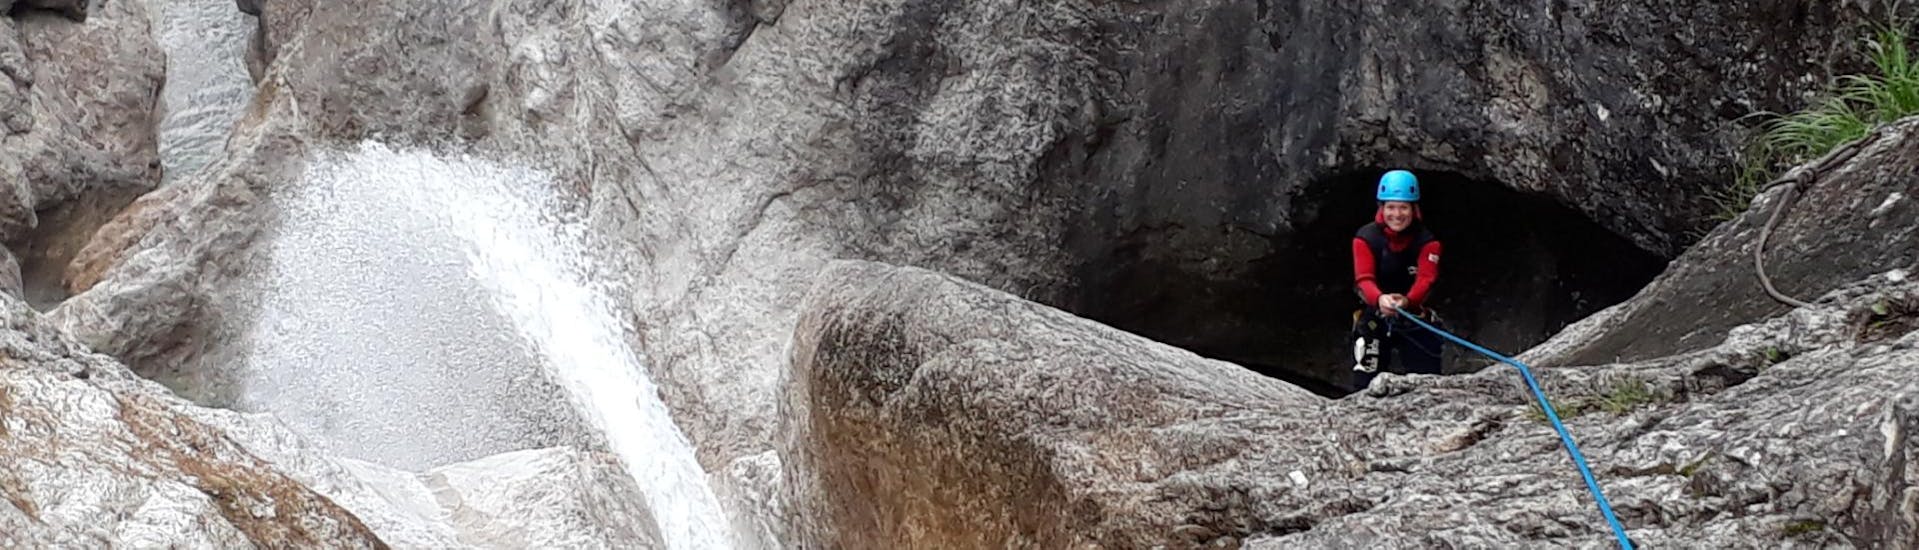 Während der Aktivität Canyoning für Mutige - Vertical Valley seilt sich eine Frau mit Begeisterung unter der Aufsicht eines staatlich geprüften Canyoningguides von Bergführer Salzburg eine Schlucht hinab.